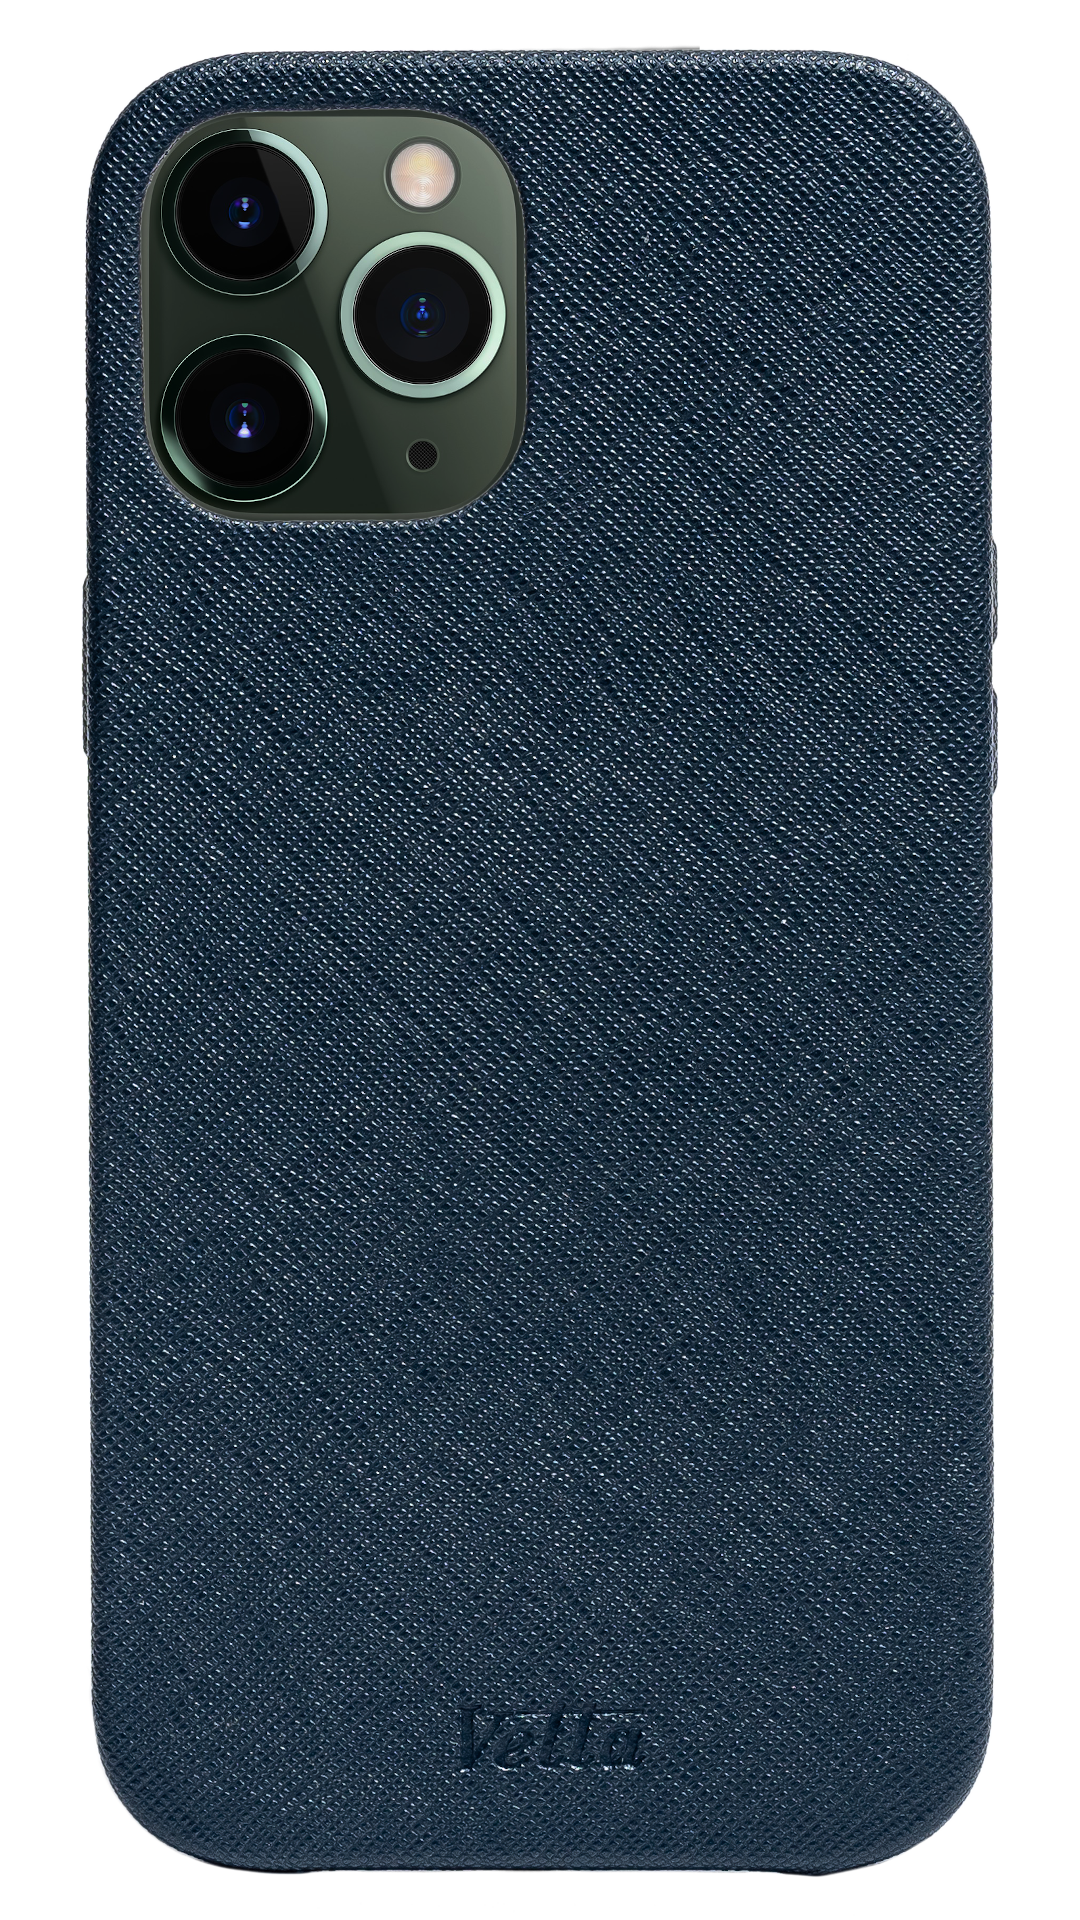 Iphone 12 Pro Max Doble fondo